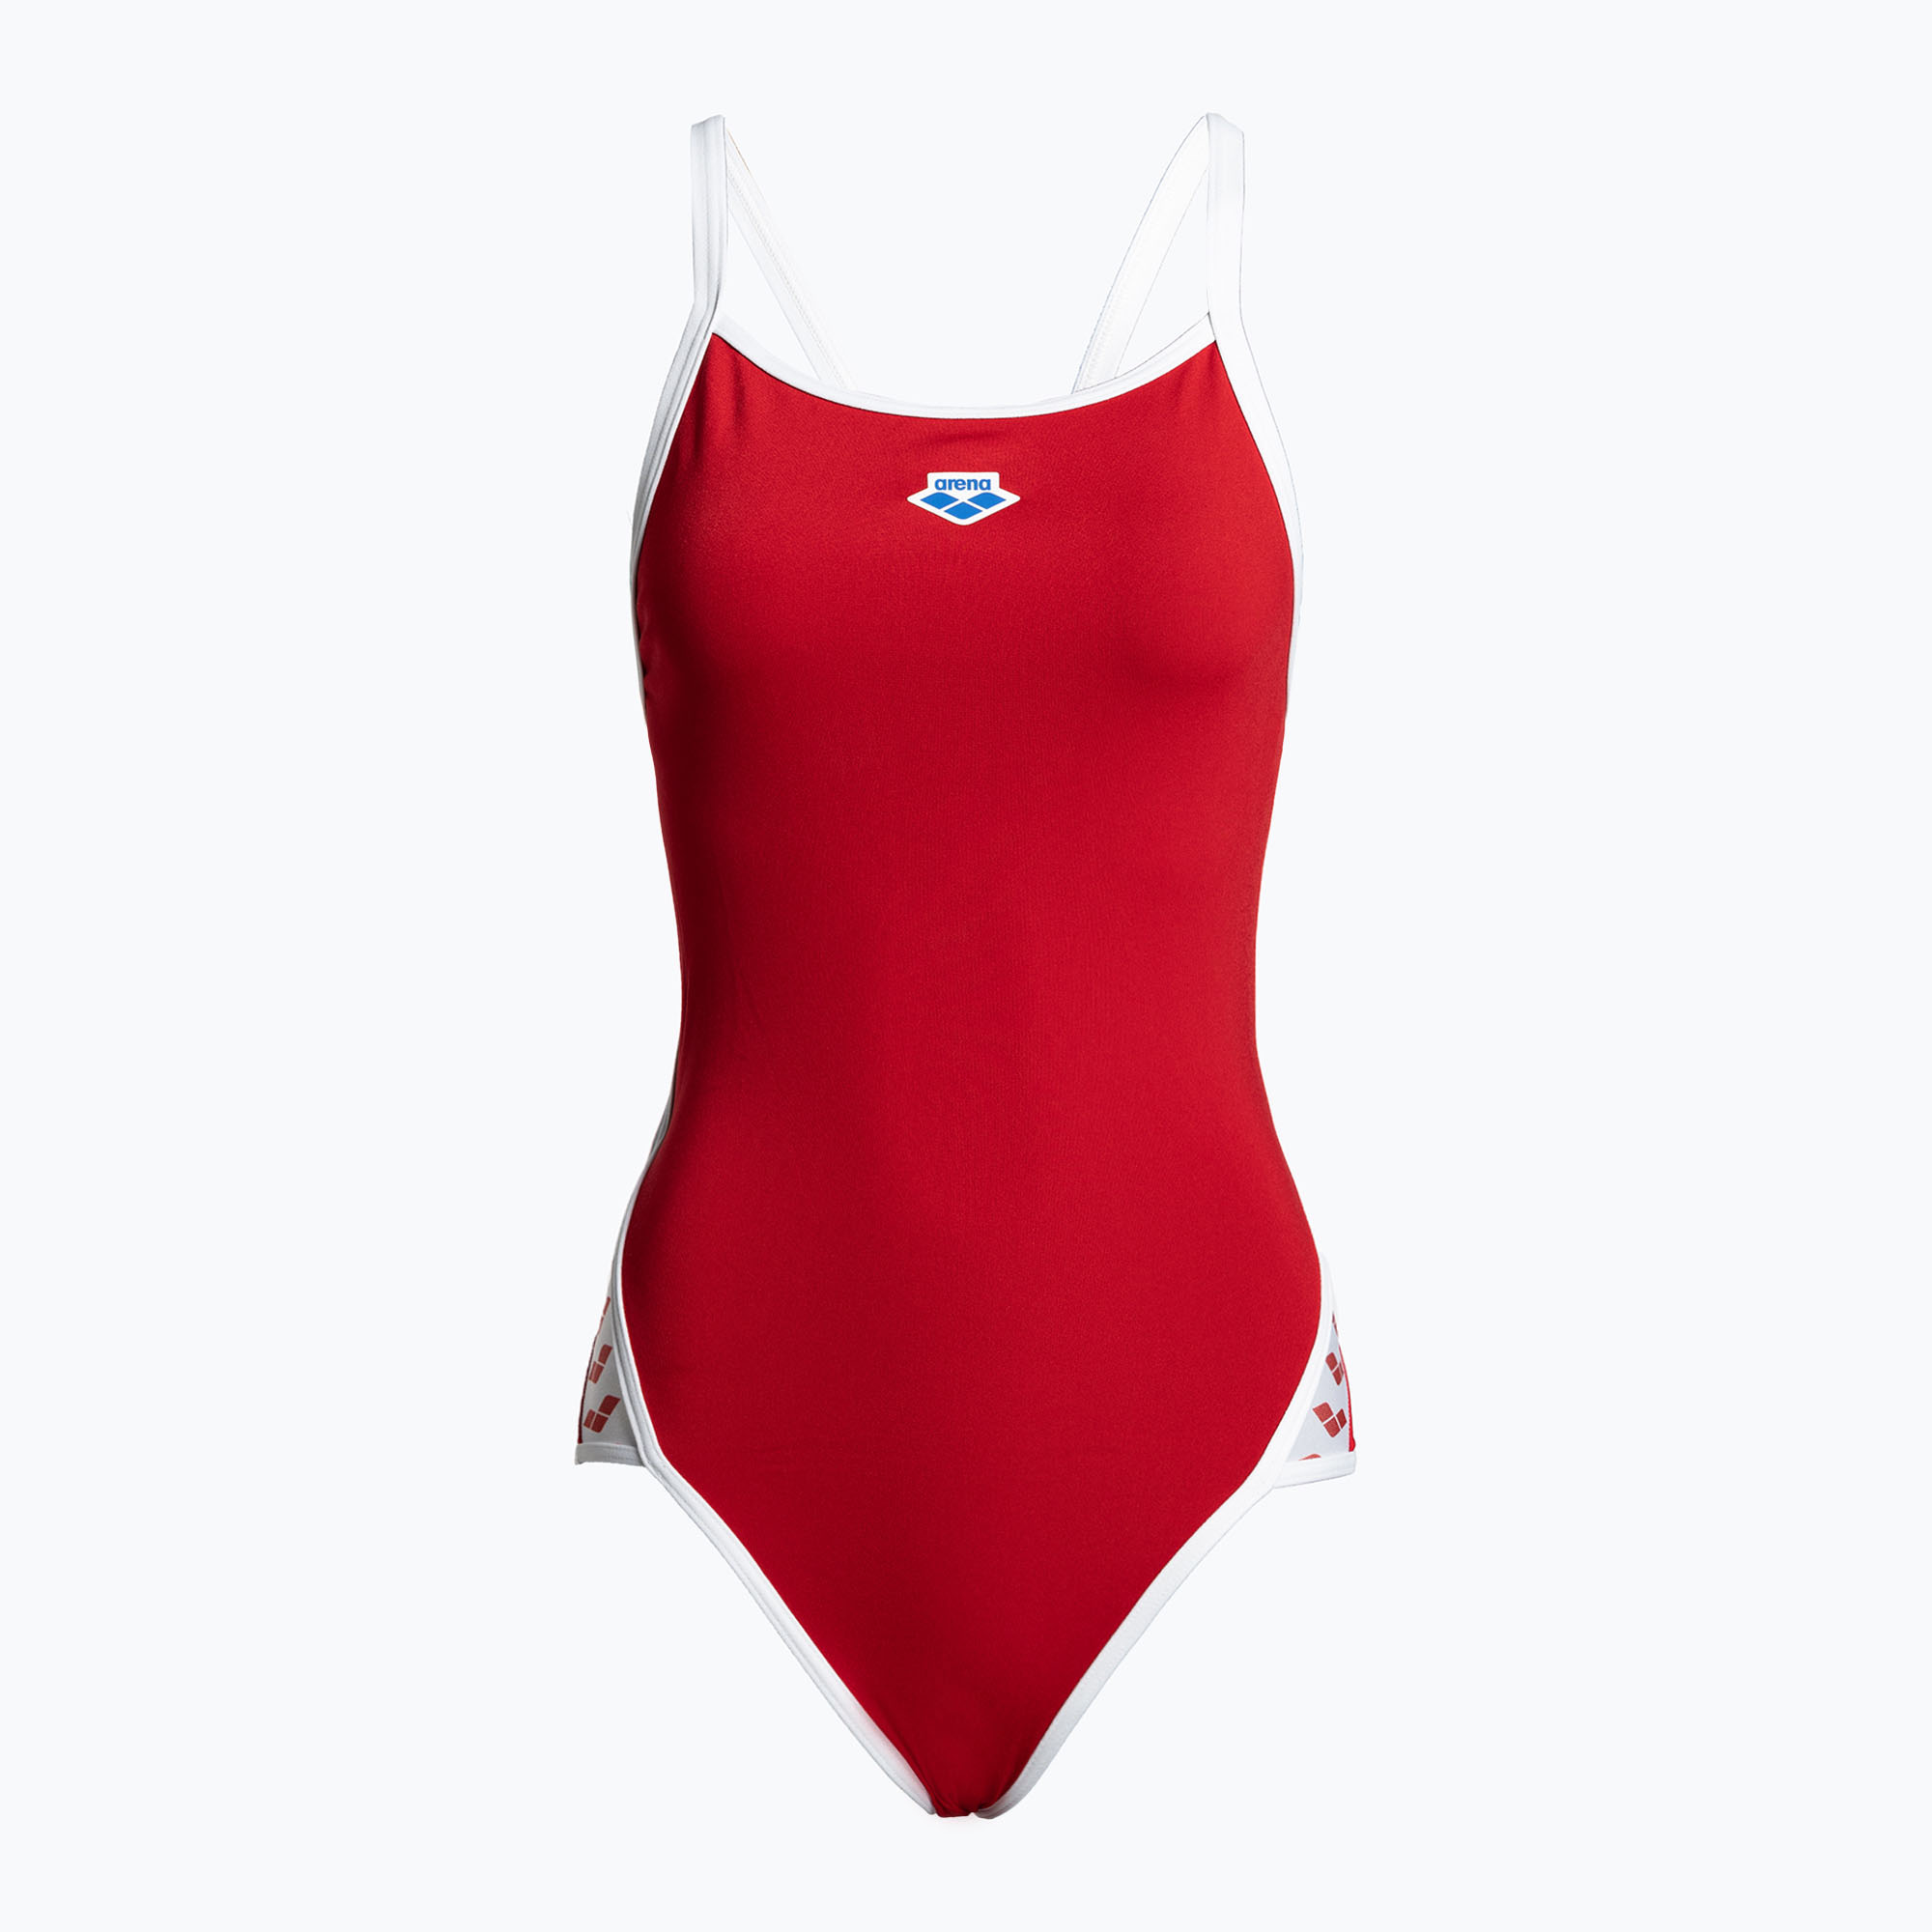 Дамски бански костюм от една част arena Icons Super Fly Back Solid red 005036